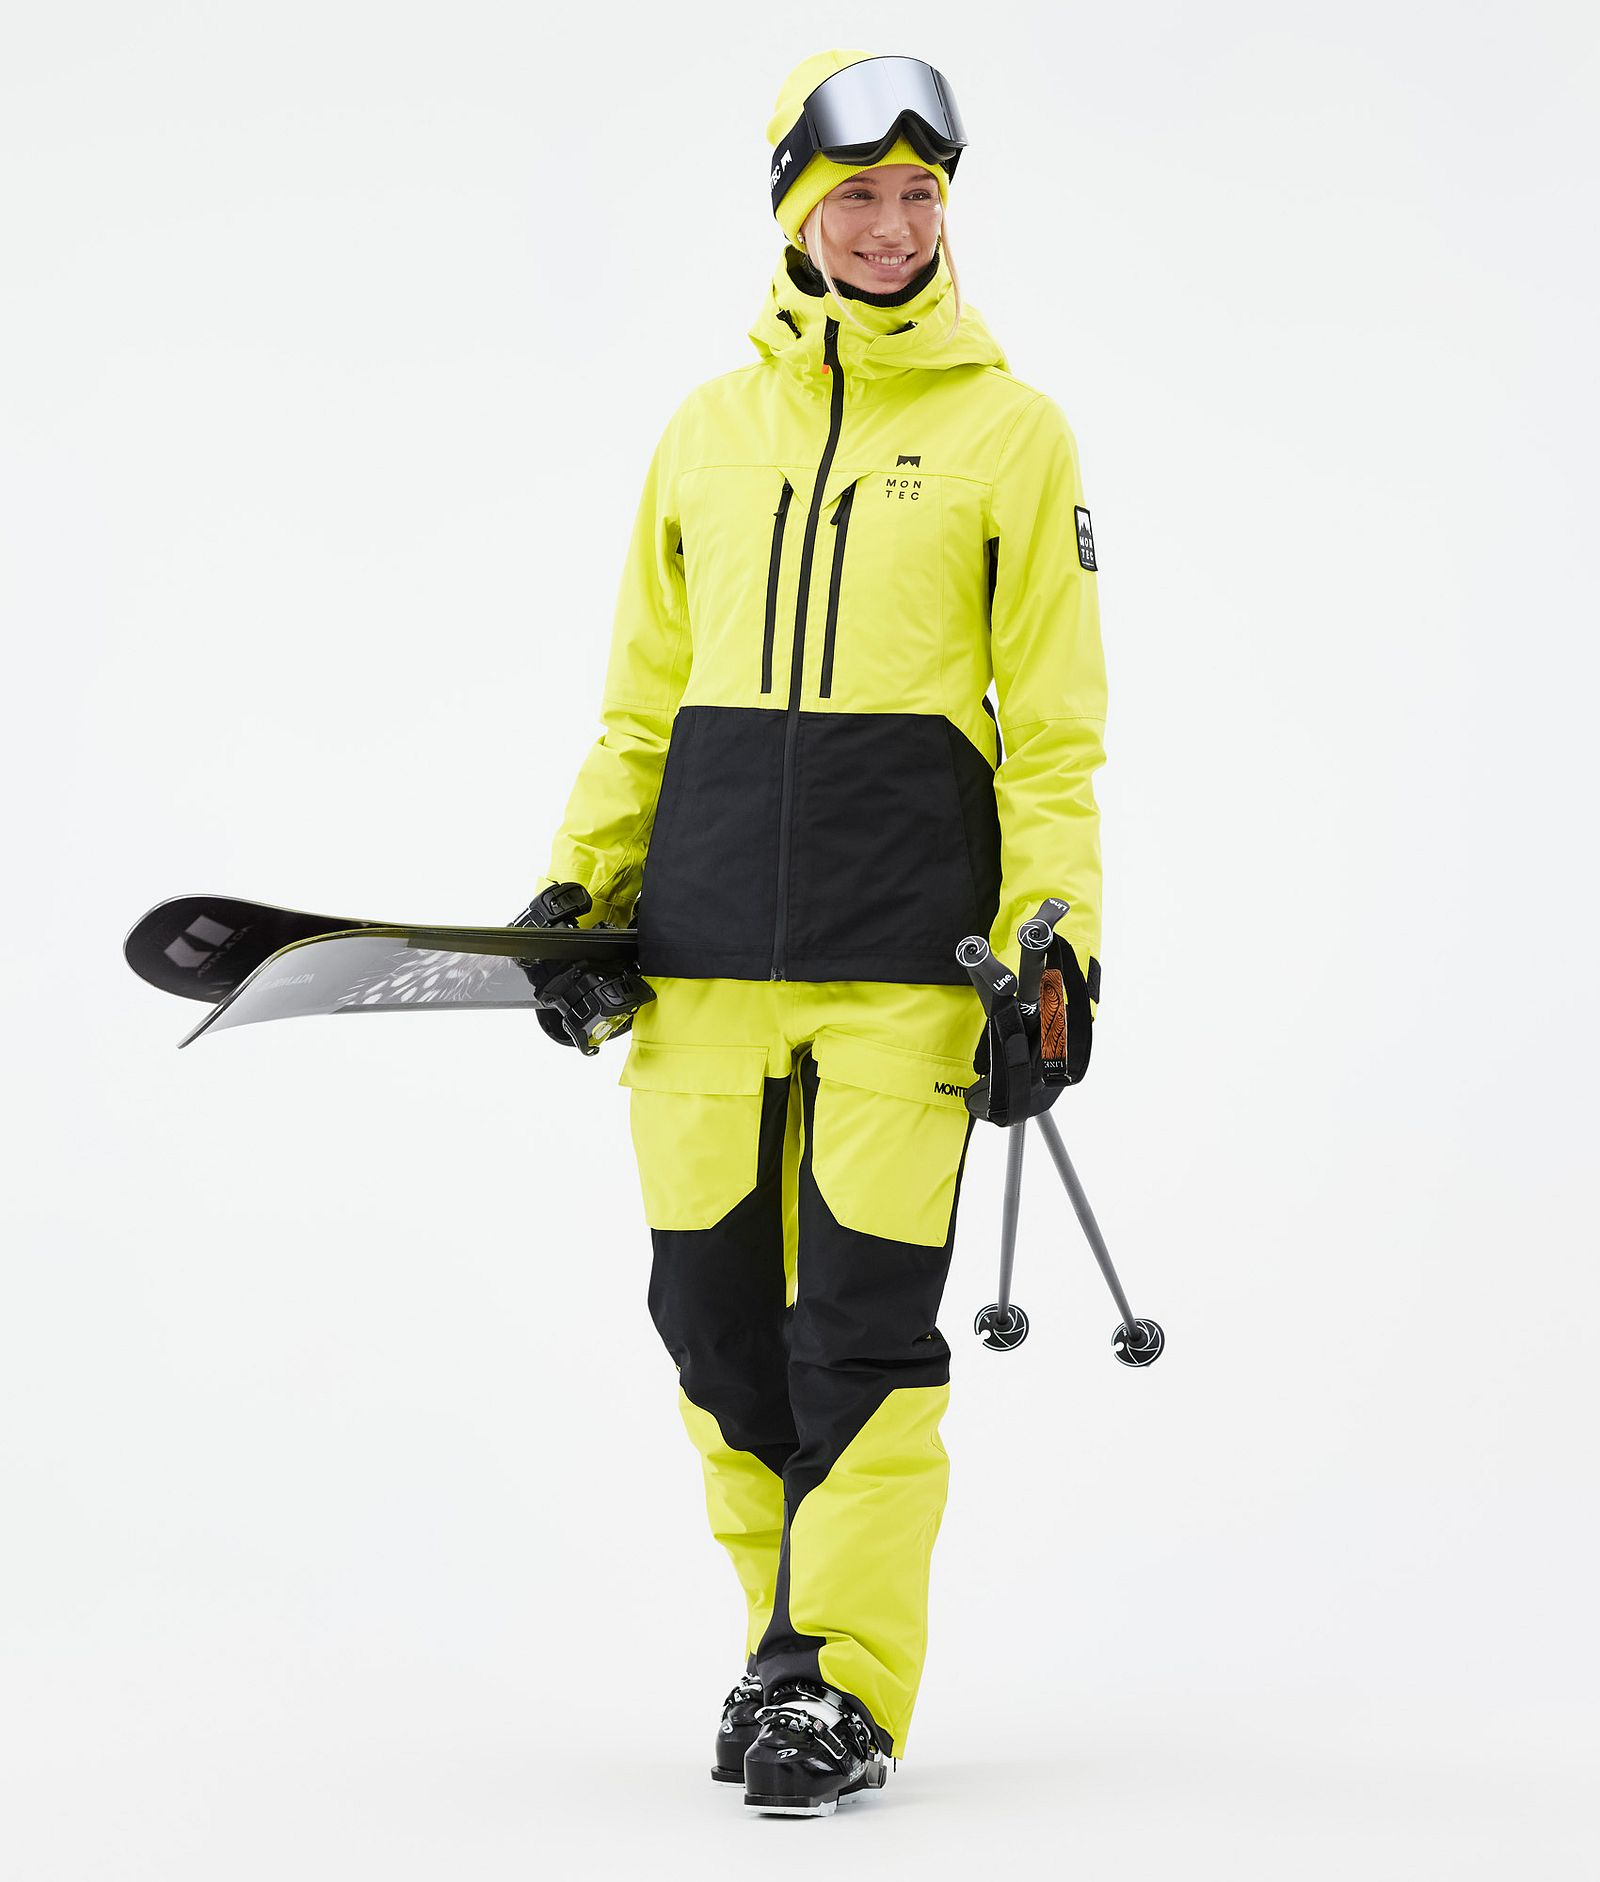 Moss W Ski Jacket Women Bright Yellow/Black, Image 3 of 10